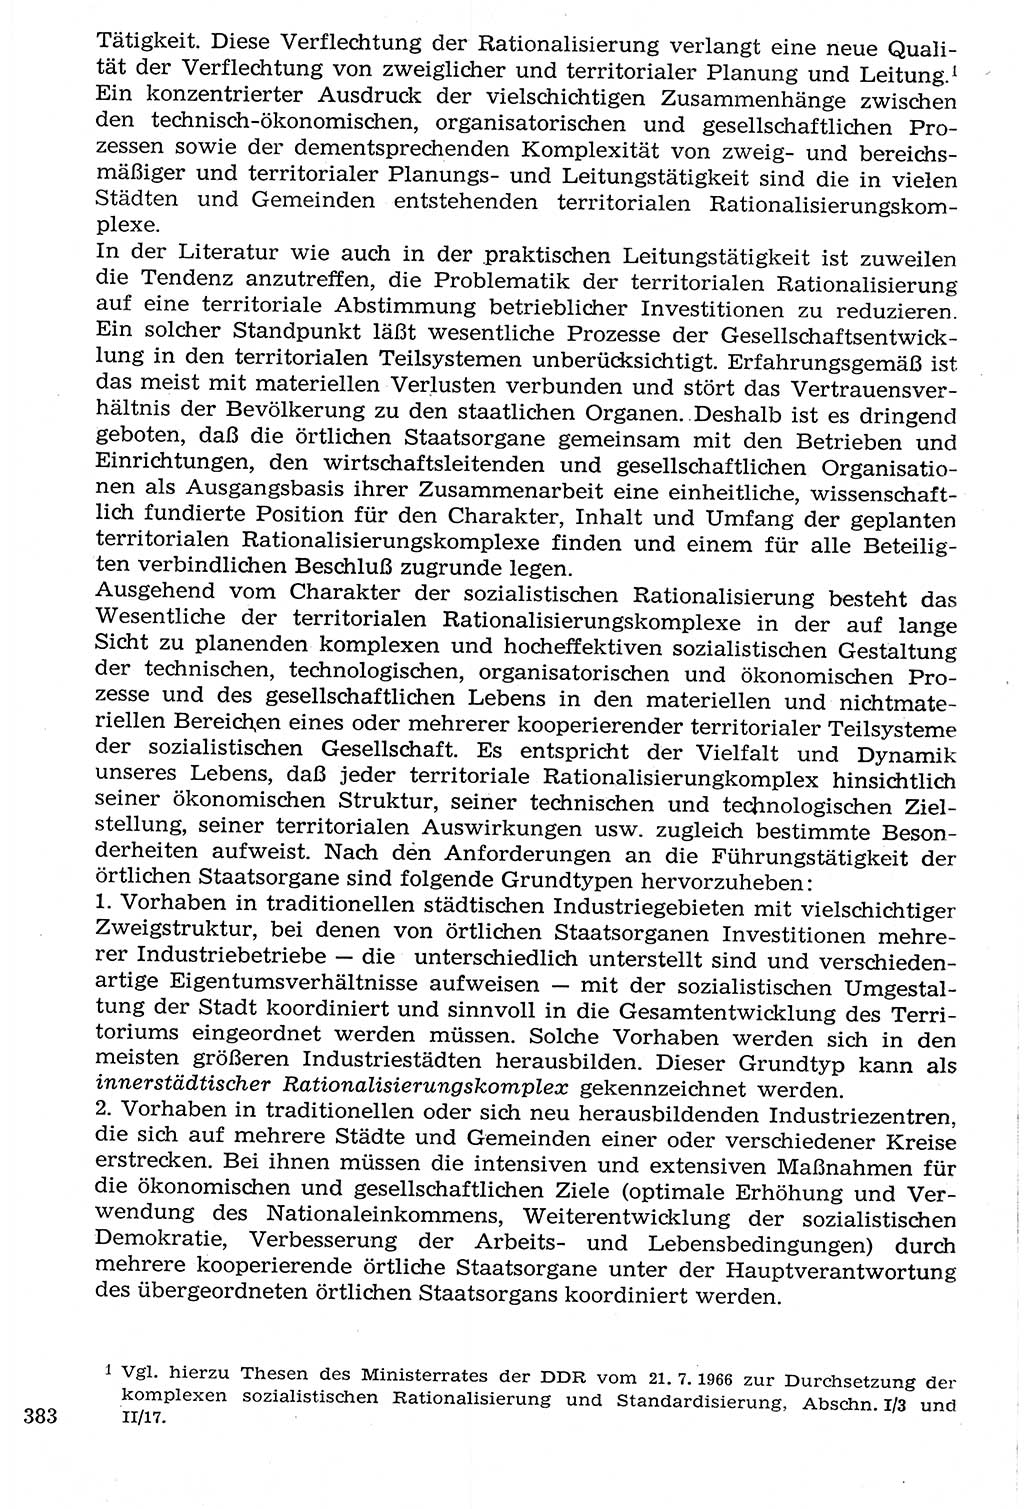 Staat und Recht (StuR), 17. Jahrgang [Deutsche Demokratische Republik (DDR)] 1968, Seite 383 (StuR DDR 1968, S. 383)